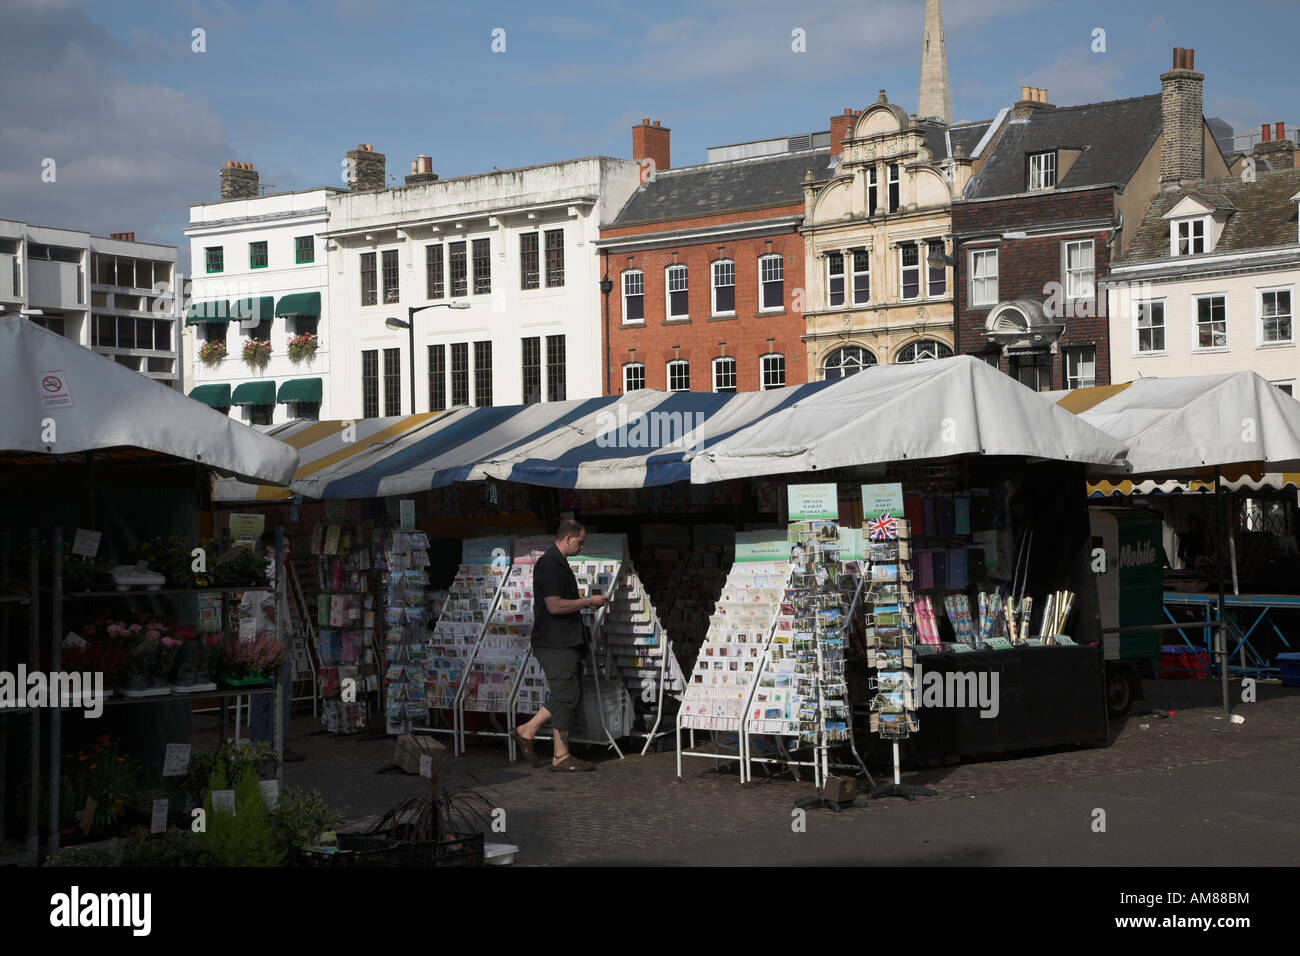 Place du marché de place avec cale, Cambridge, Angleterre Banque D'Images